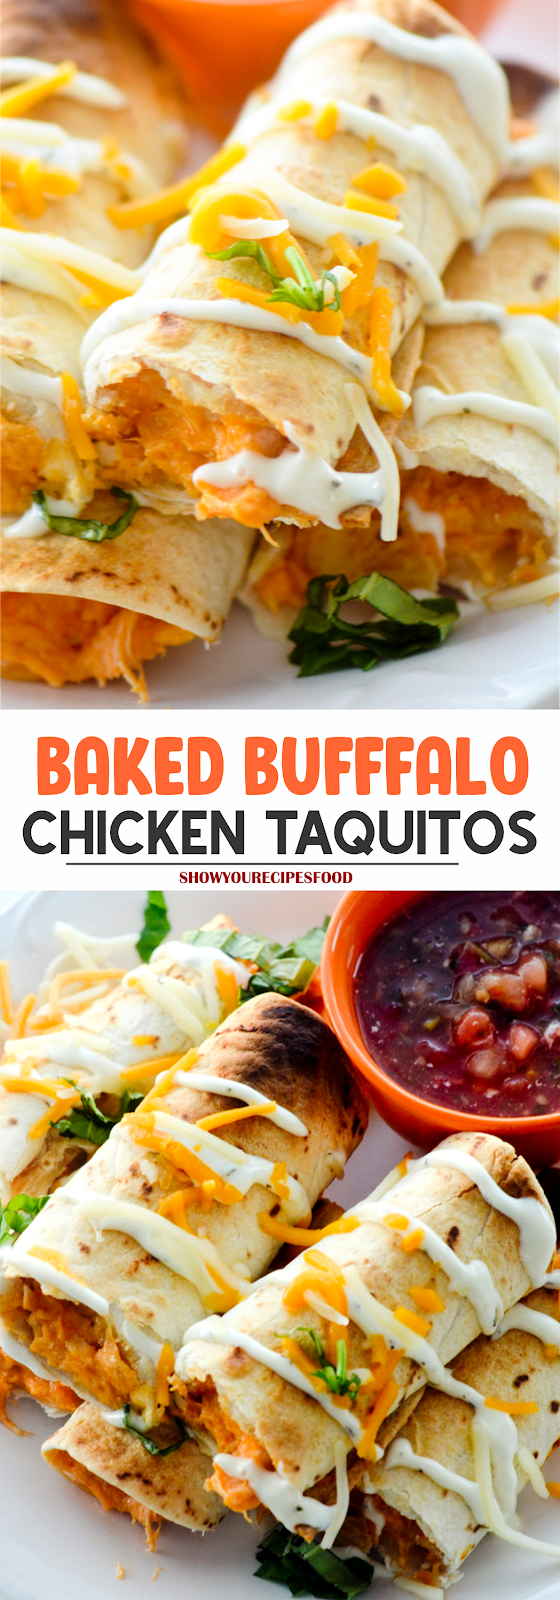 BAKED BUFFFALO CHICKEN TAQUITOS | Show You Recipes